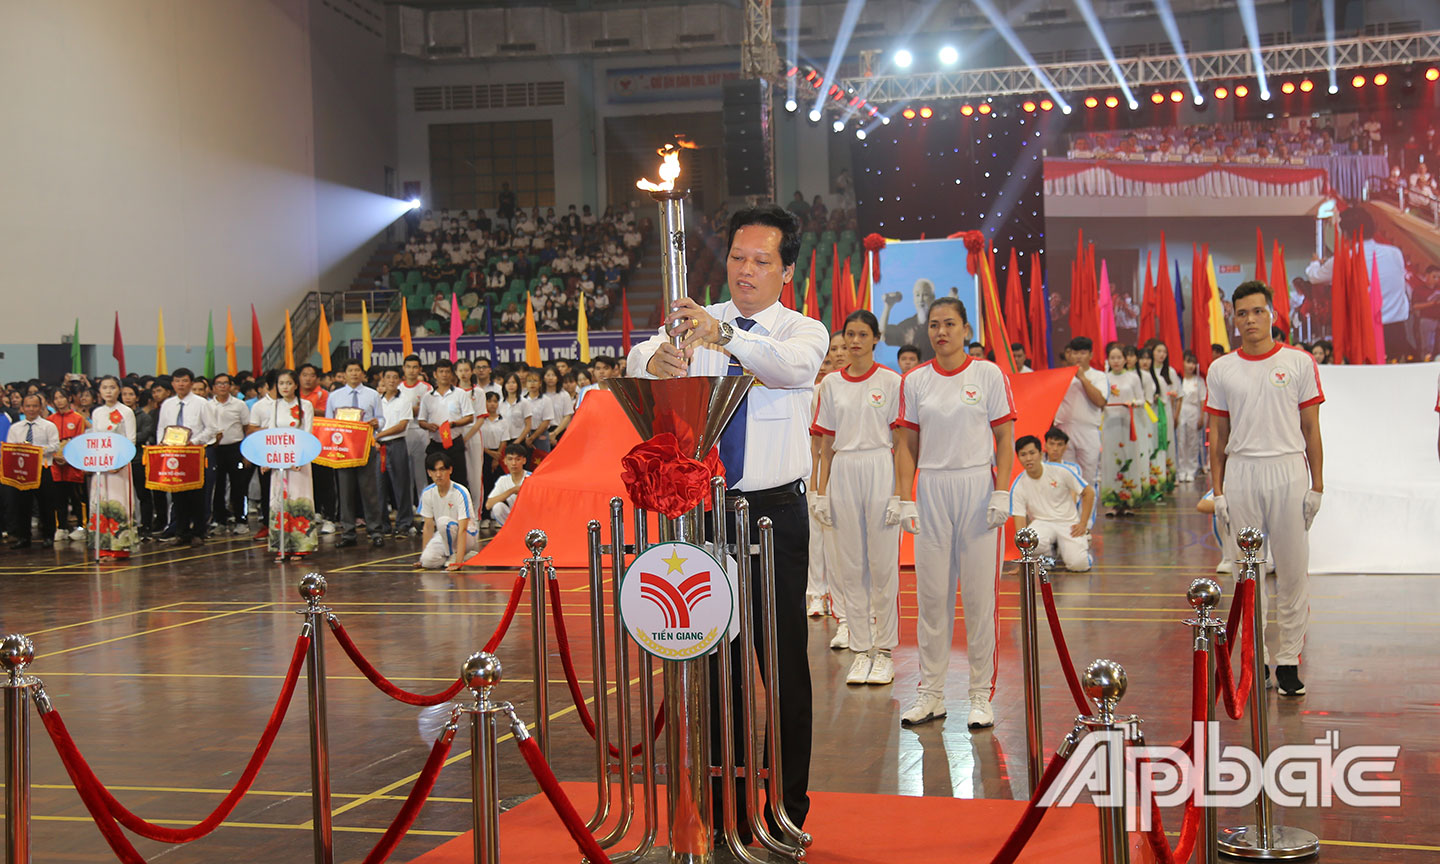 Đồng chí Nguyễn Thành Diệu thực hiện nghi thức thắp sáng Đại hội.